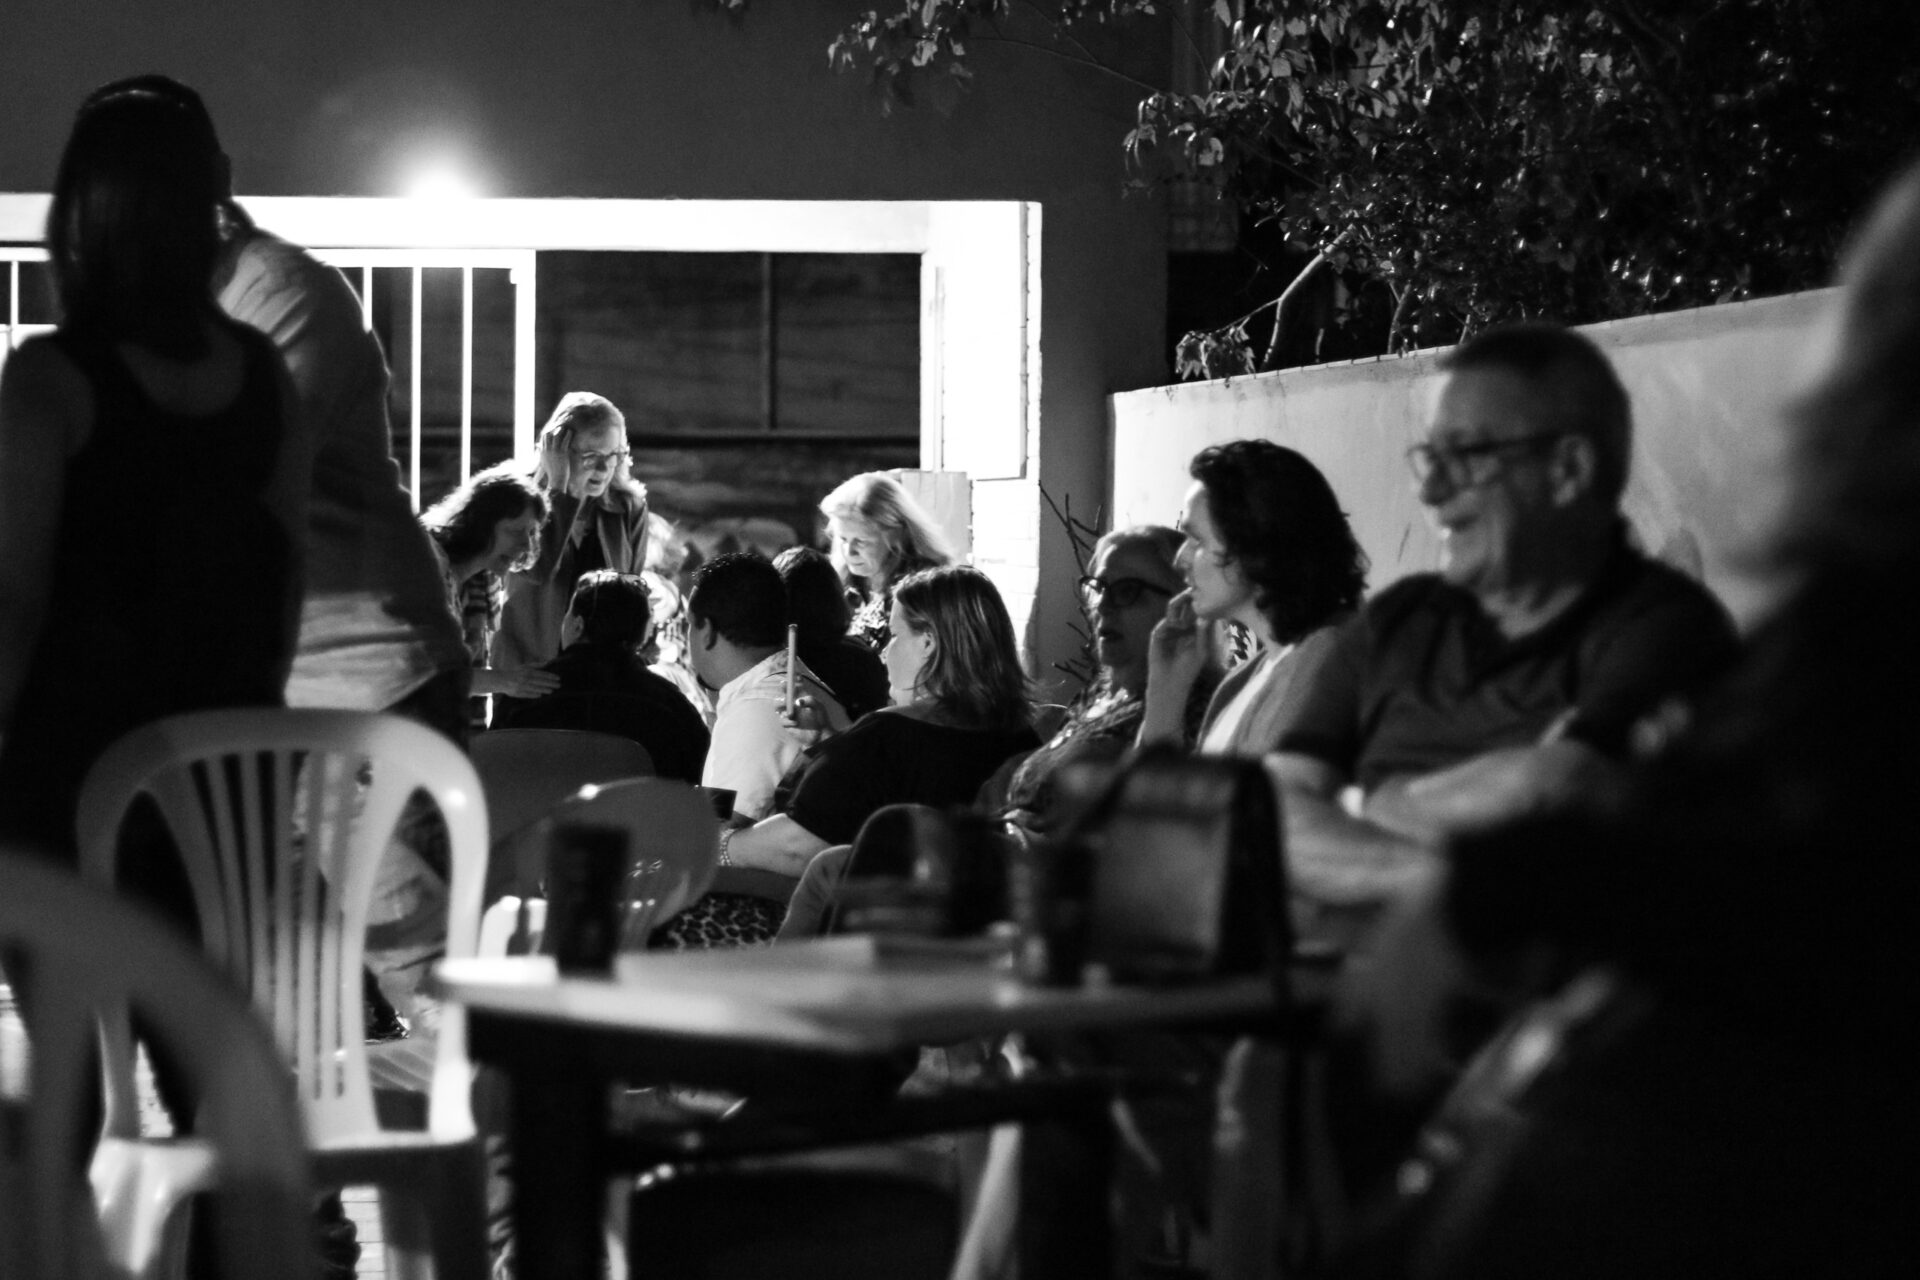 Instituto de Cachoeirinha organiza evento anos 80 com música ao vivo